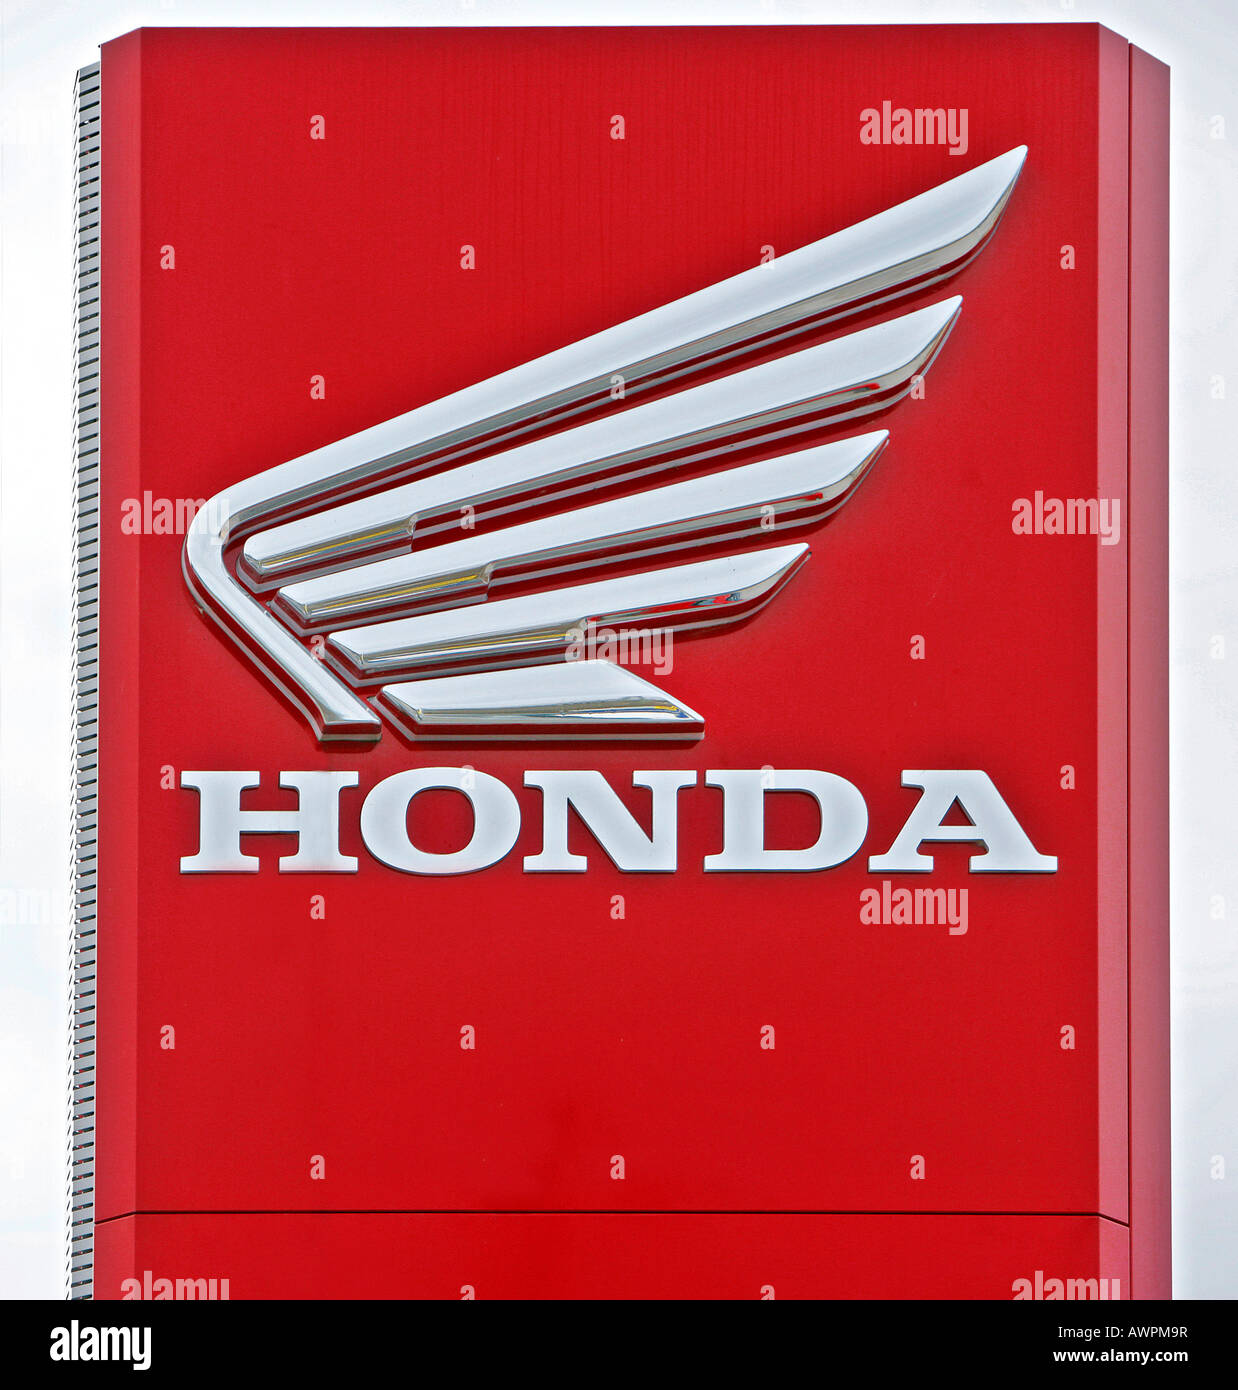 Honda logo Stock Photo